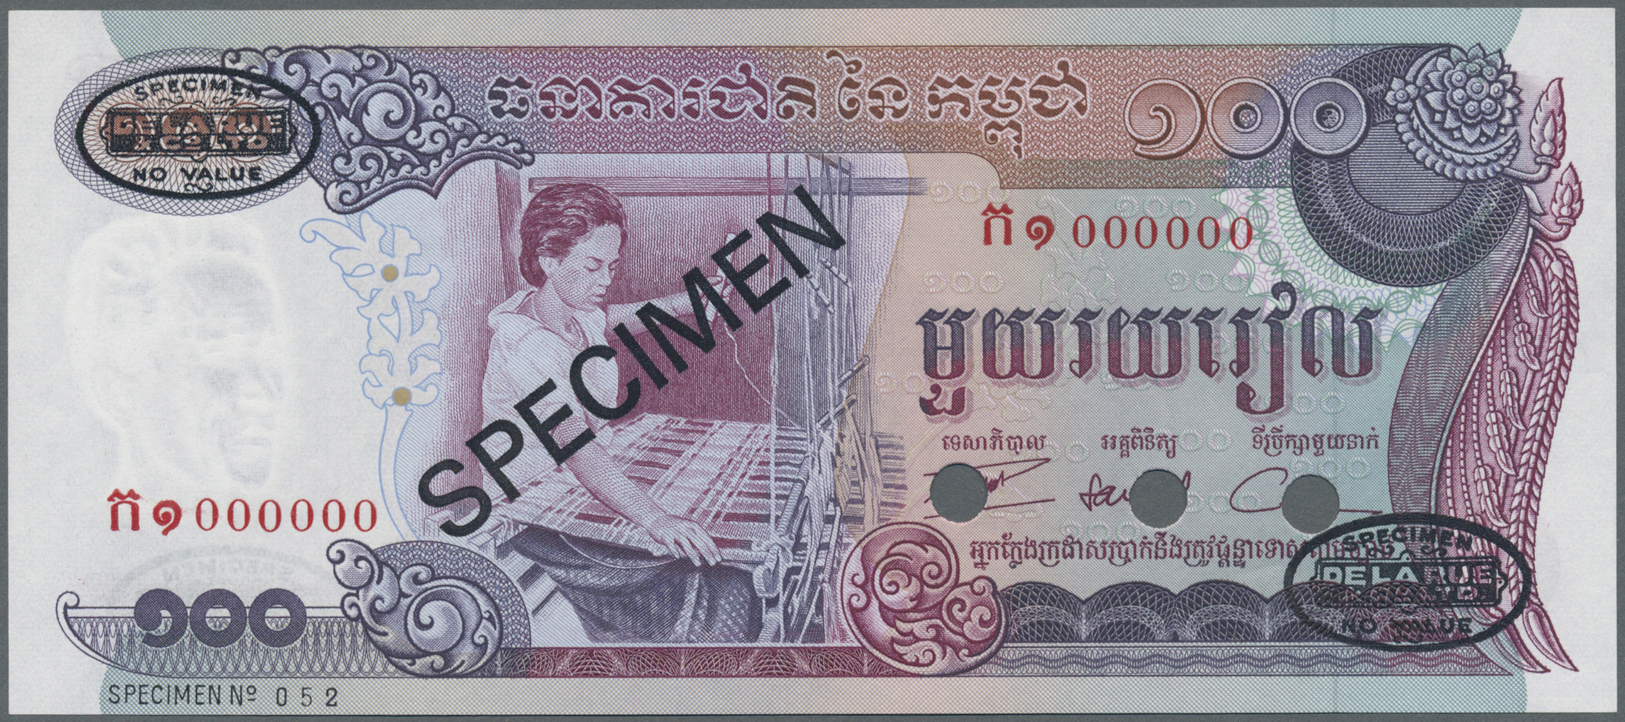 00460 Cambodia / Kambodscha: 100 Riels ND Specimen P. 15as In Condition: UNC. - Cambodia